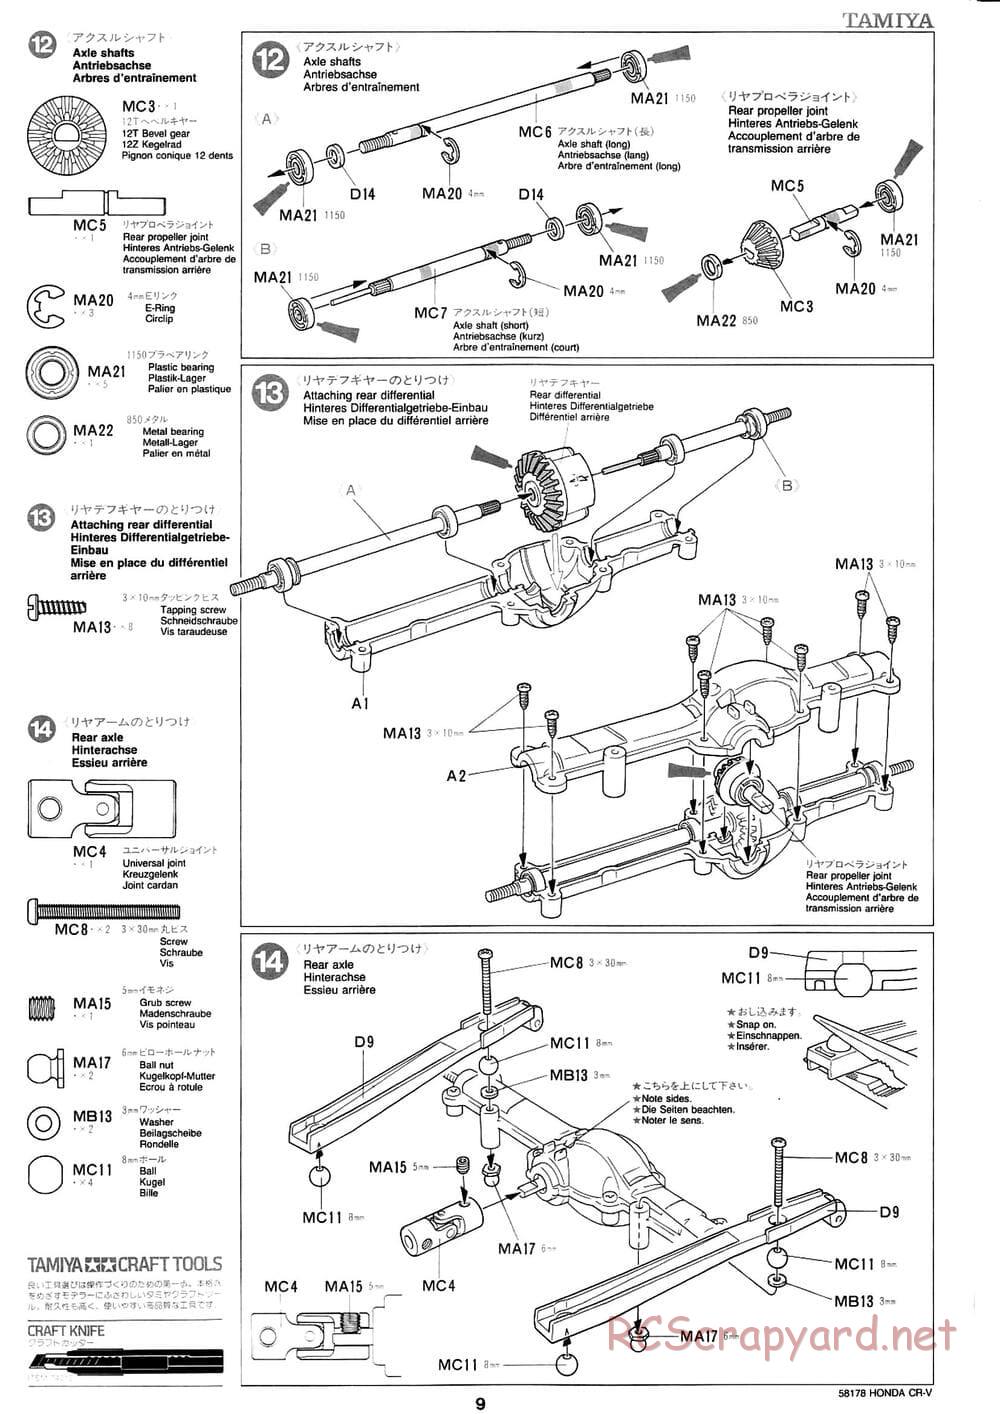 Tamiya - Honda CR-V - CC-01 Chassis - Manual - Page 9